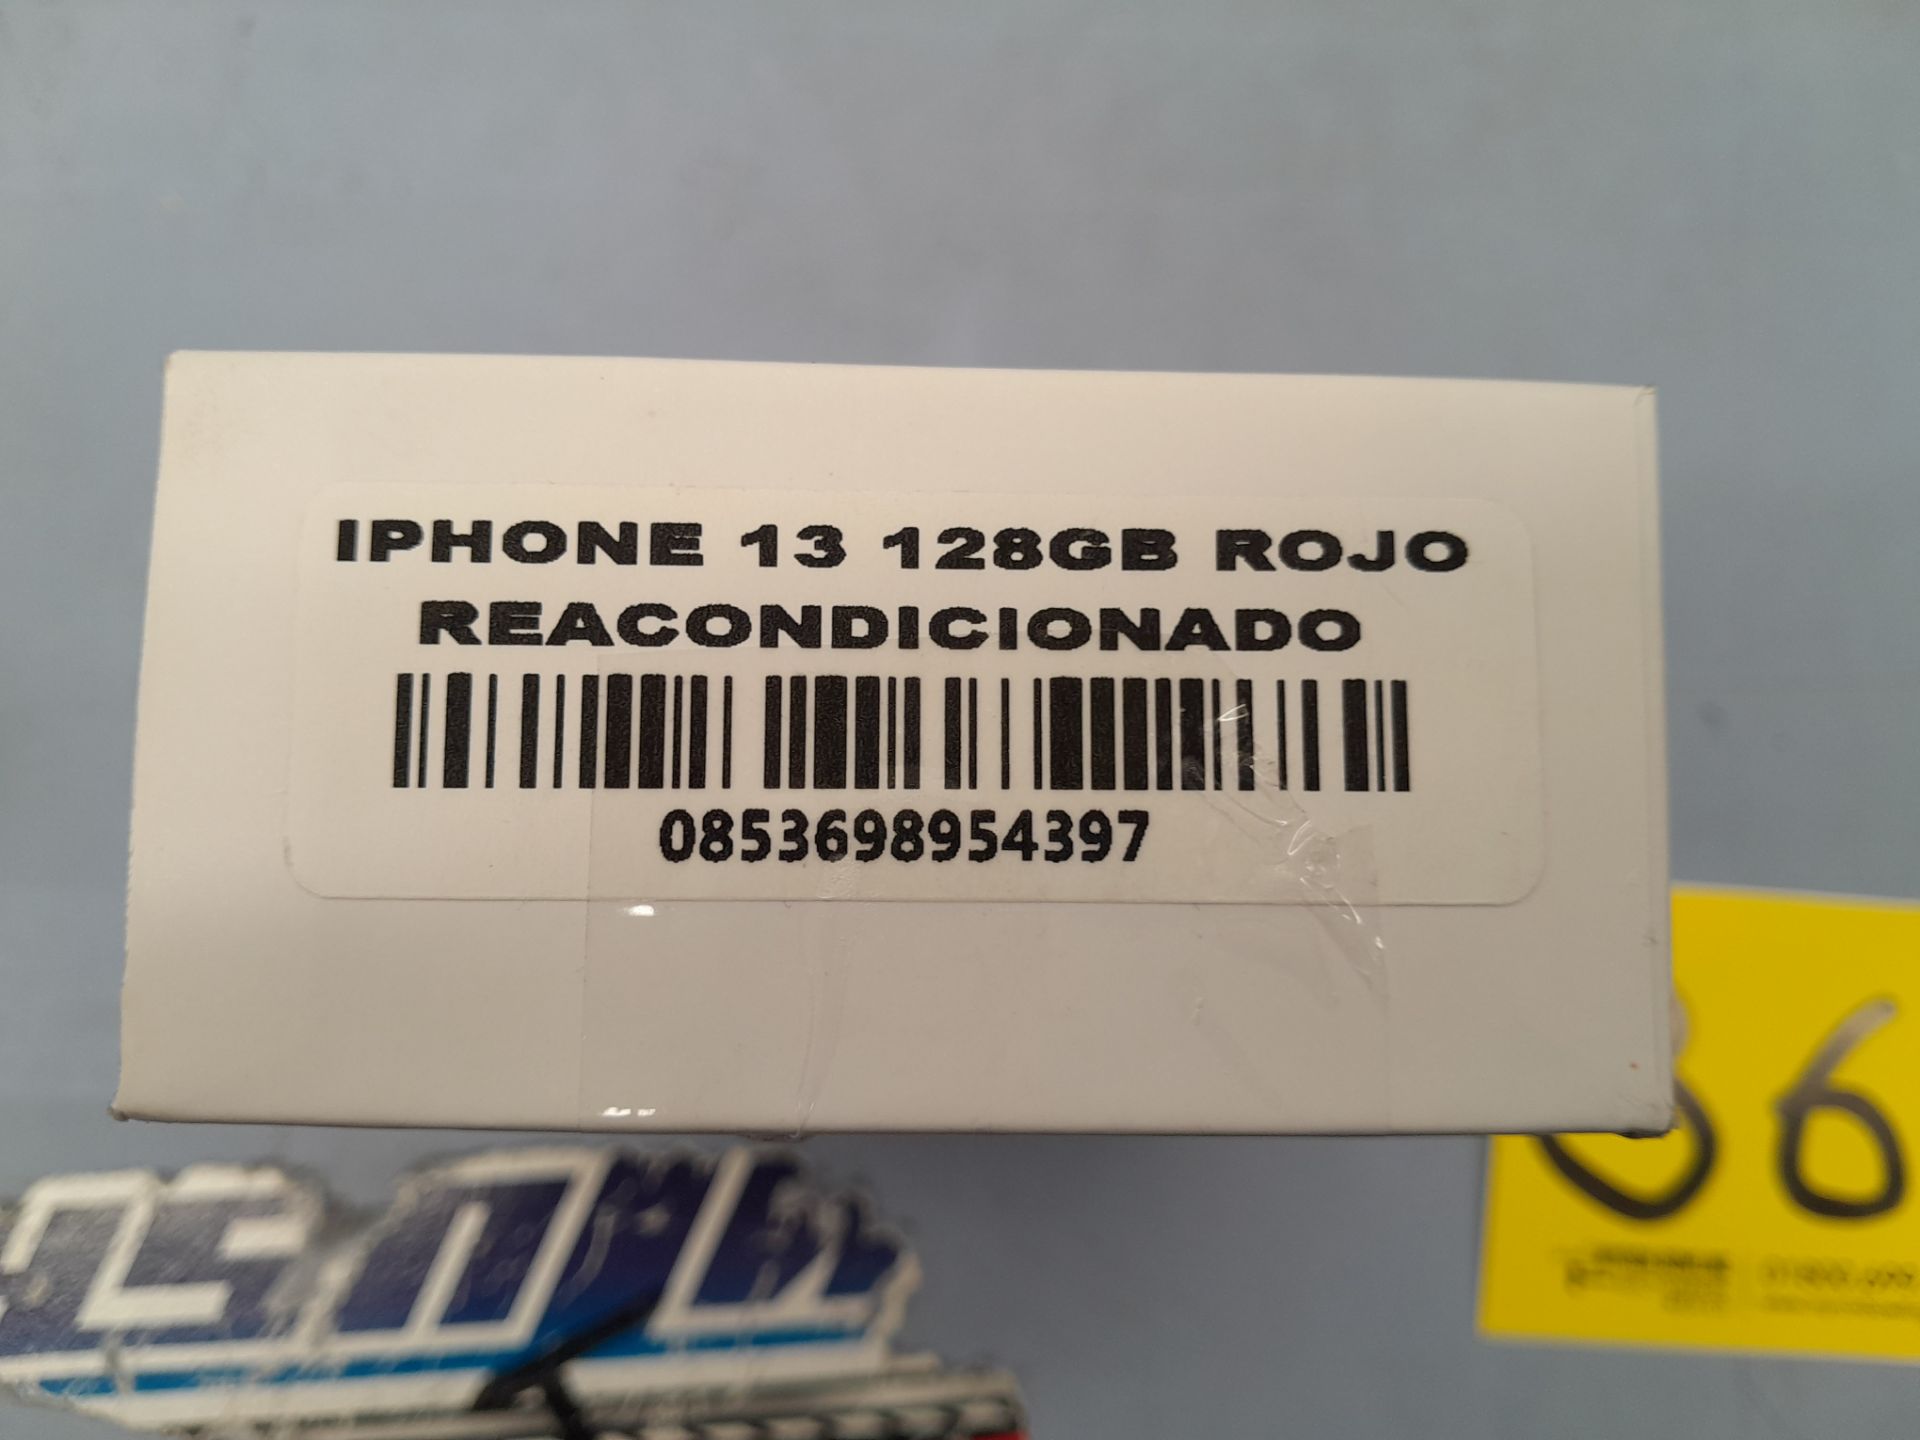 Lote de 1 iPhone 13 de 128 GB color ROJO (enciende) (no se asegura su funcionamiento, favor de insp - Image 3 of 3